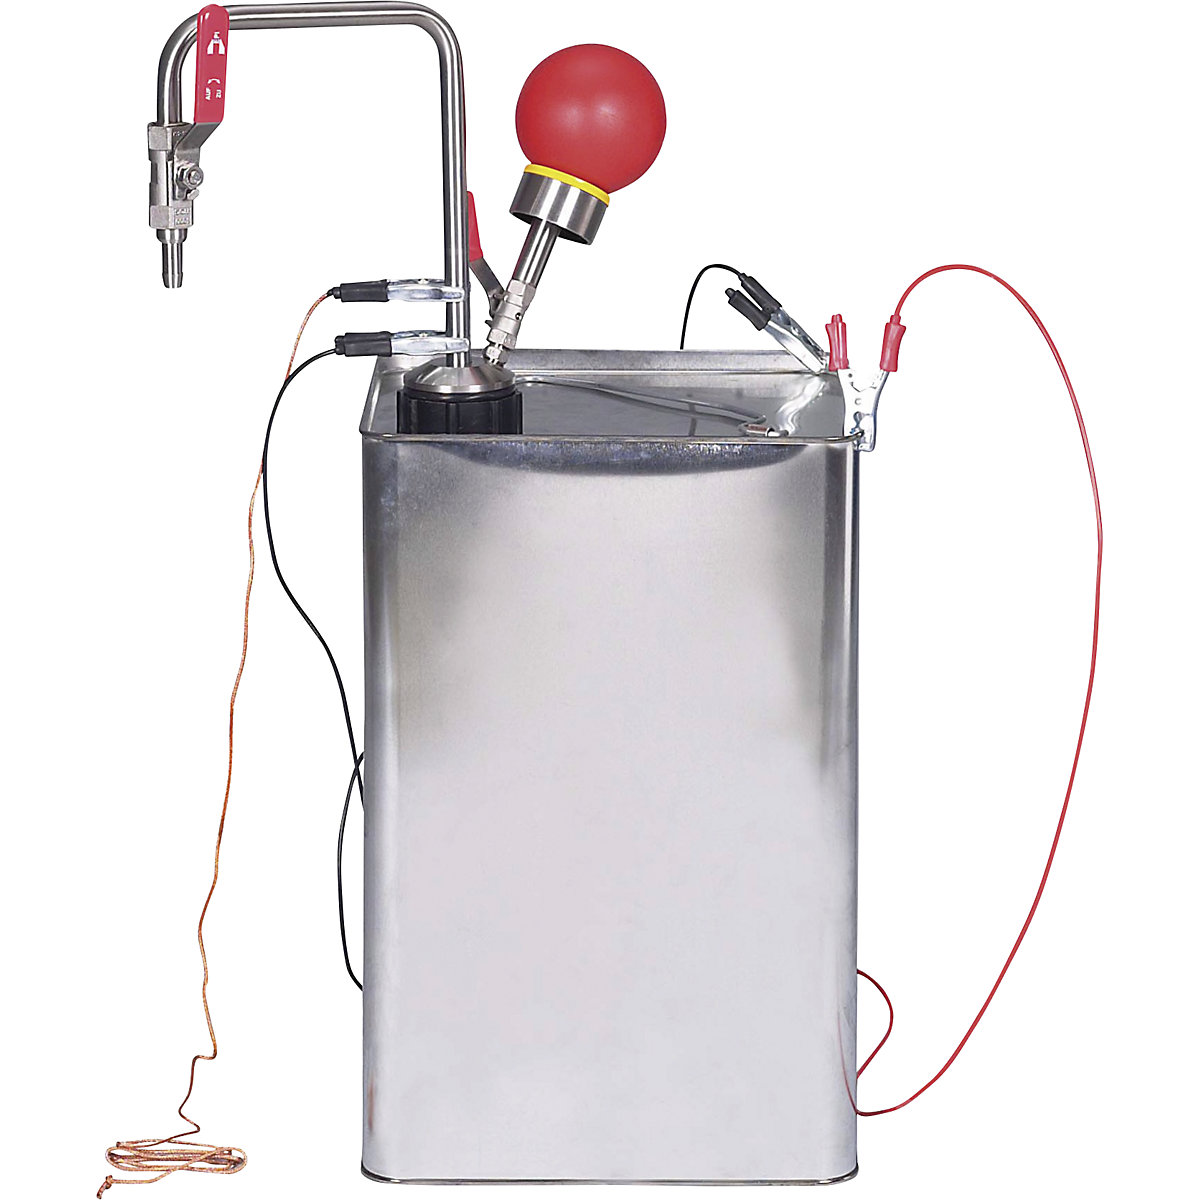 Črpalka za topila, iz nerjavnega jekla, upravljanje z roko (Slika izdelka 6)-5